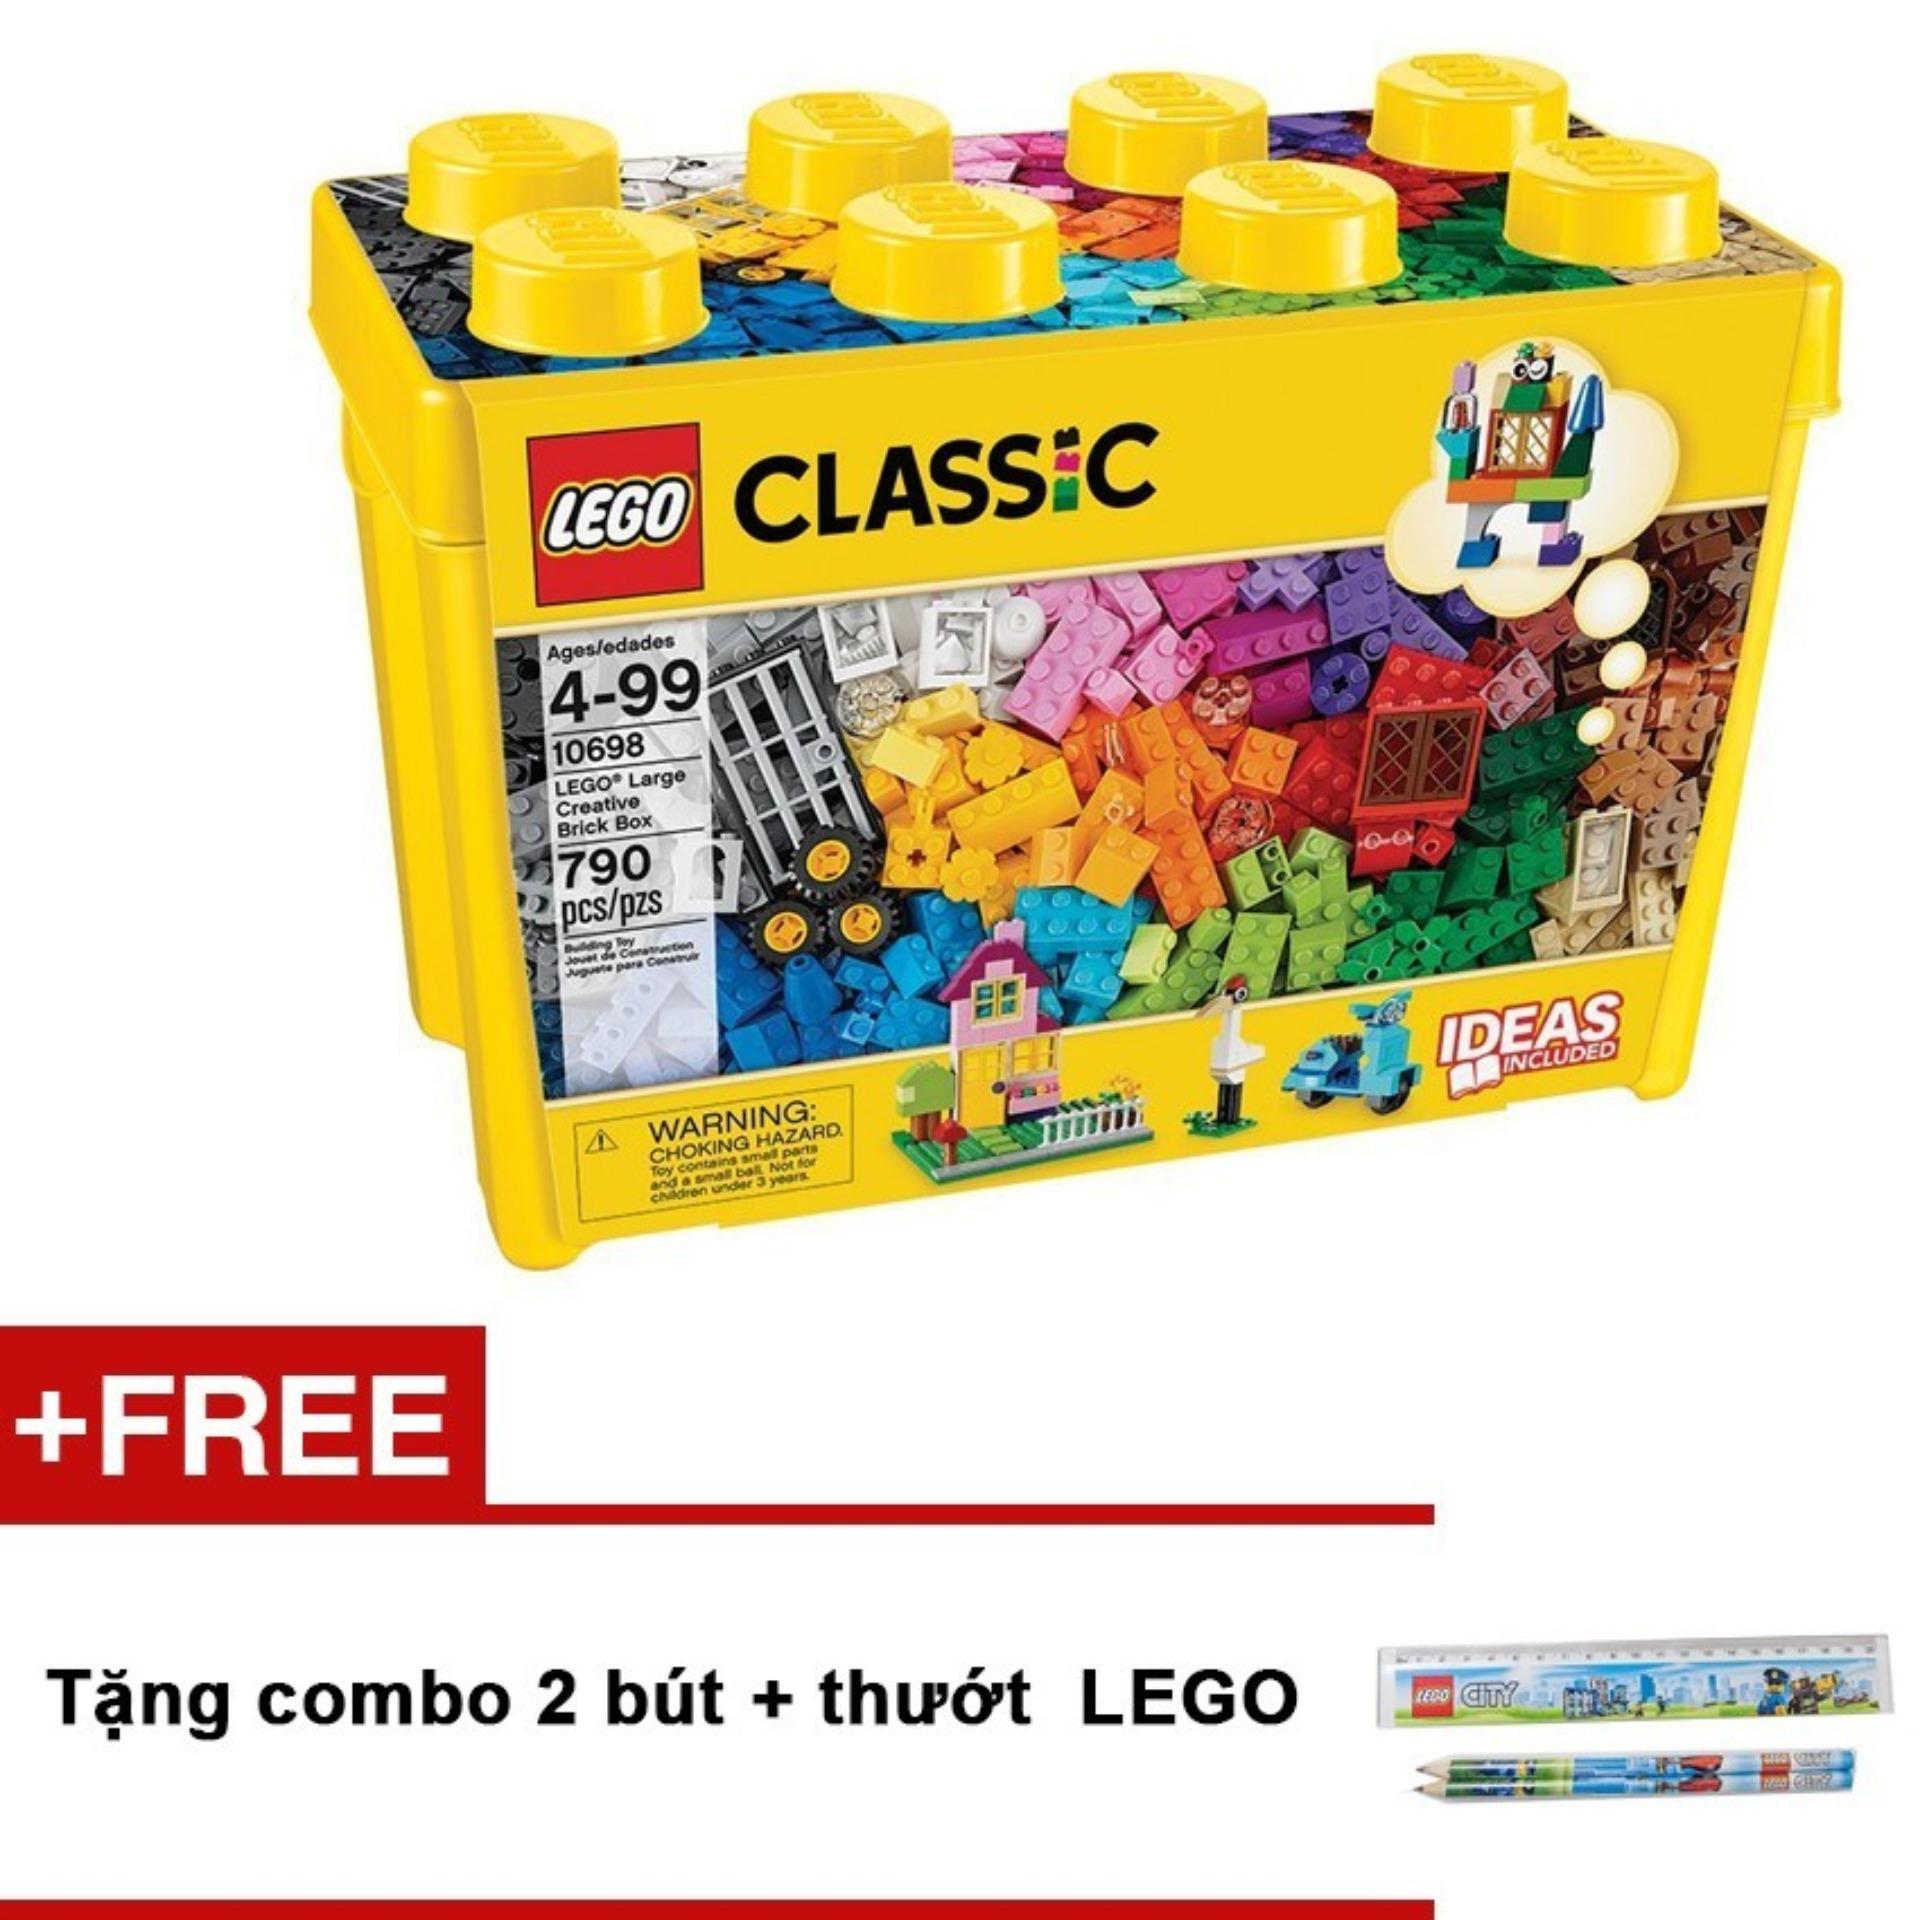 Hộp Lego Classic 10698 Thùng gạch lớn sáng tạo (790 chi tiết) + Tặng combo 2 bút + thướt LEGO